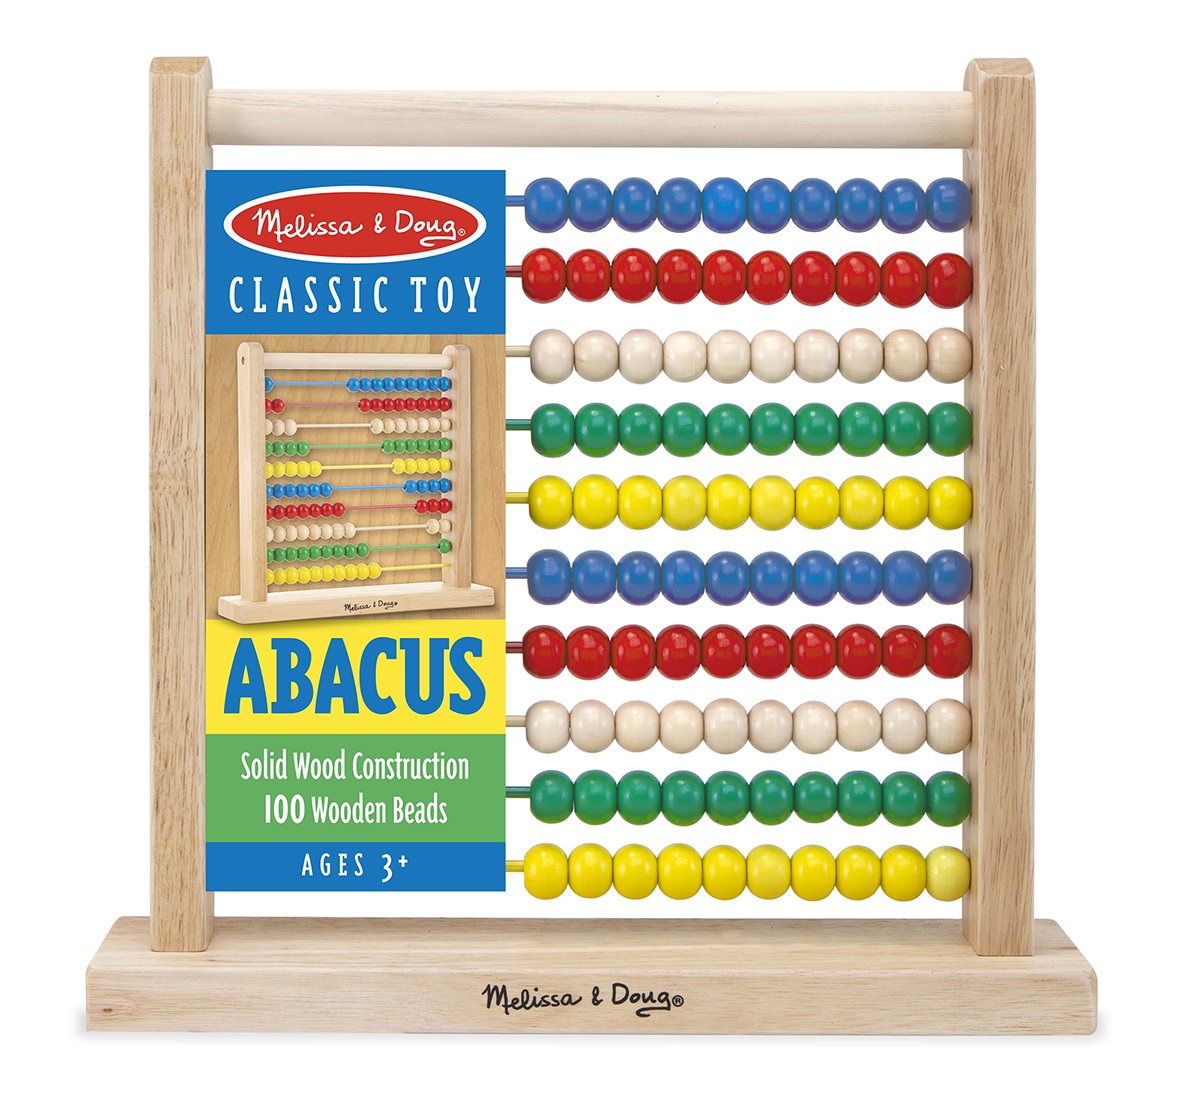 ชุดของเล่นไม้ลูกคิด Abacus รุ่น 493 ยี่ห้อ Melissa & Doug  (นำเข้า USA)